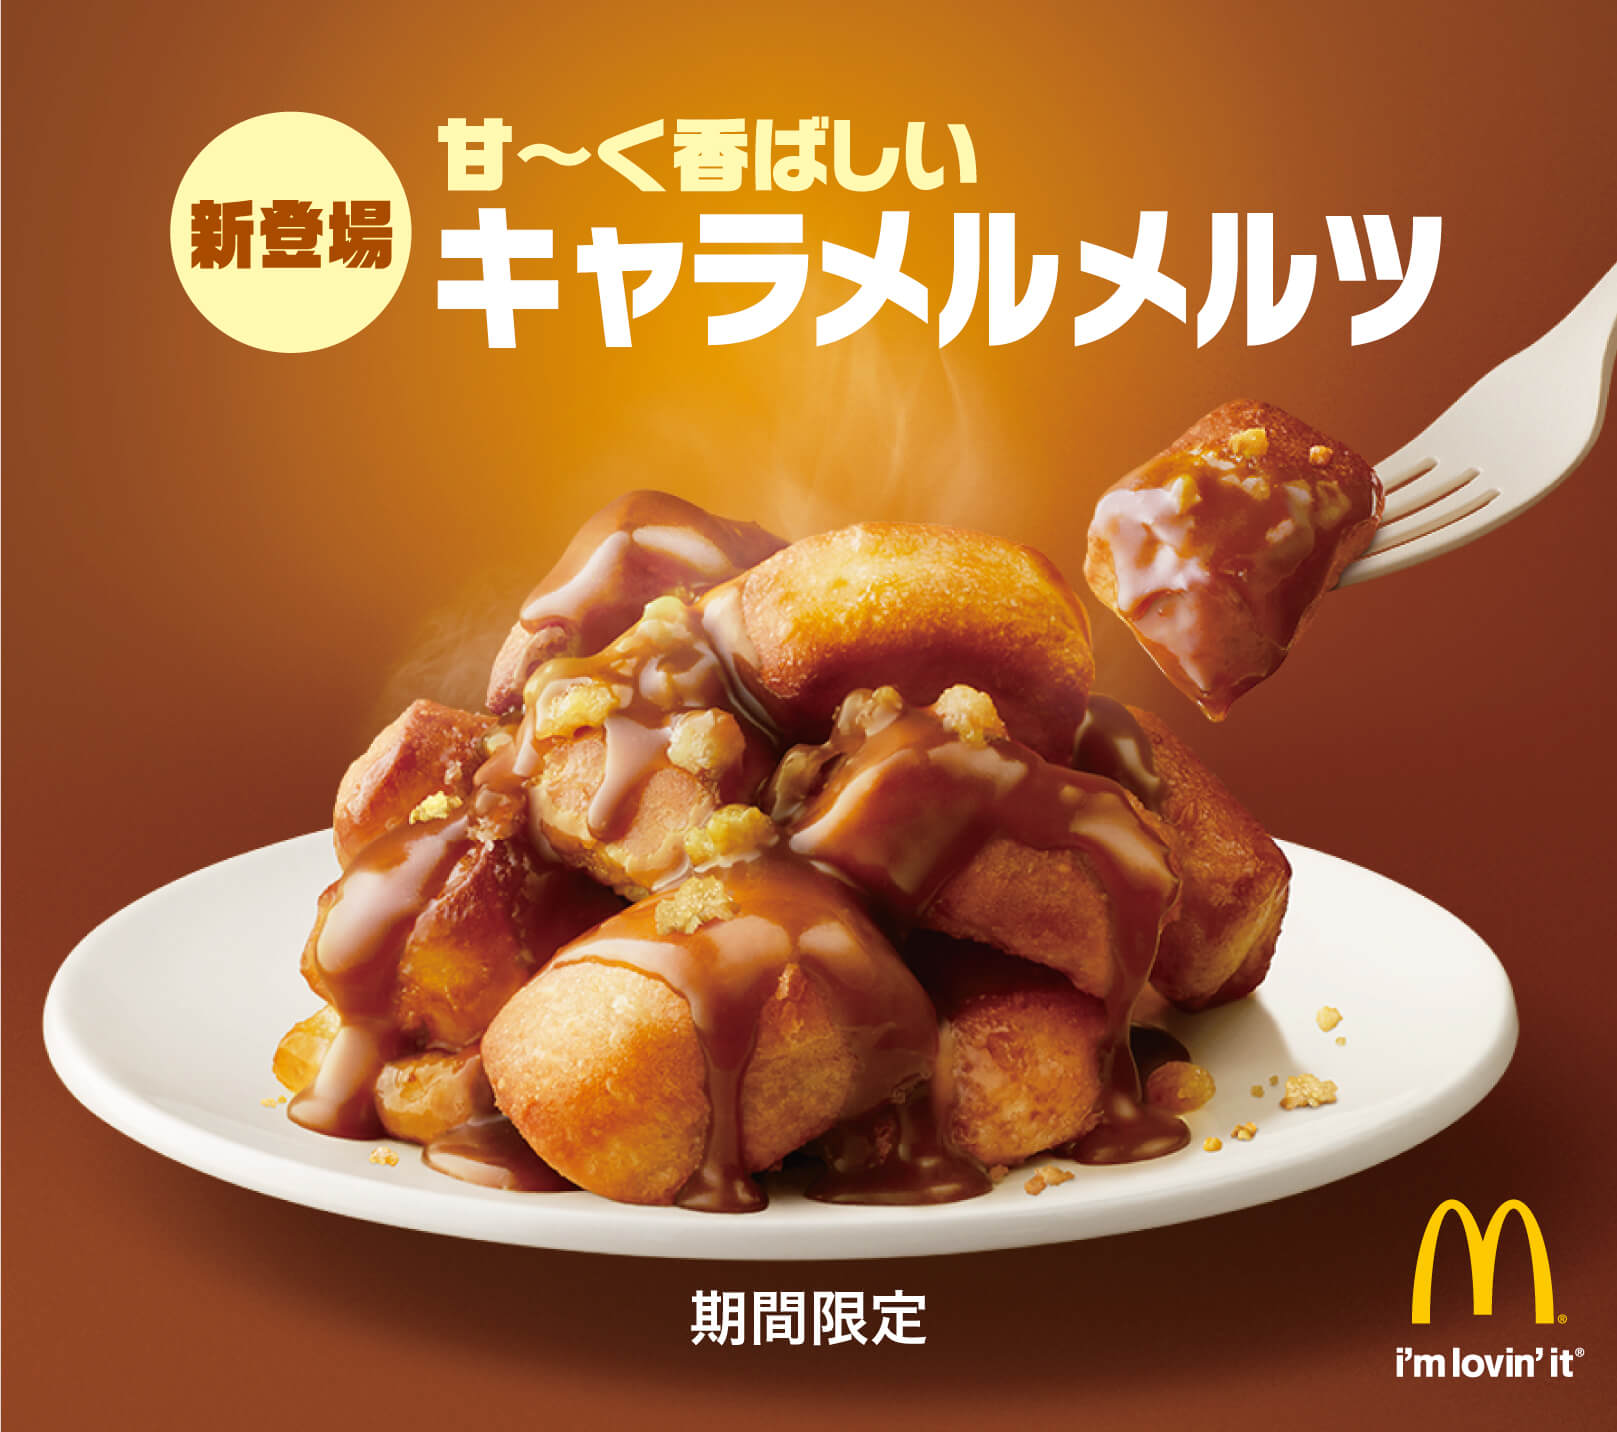 マクドナルド McDonald’s Japan 麥當勞 キャラメルメルツ